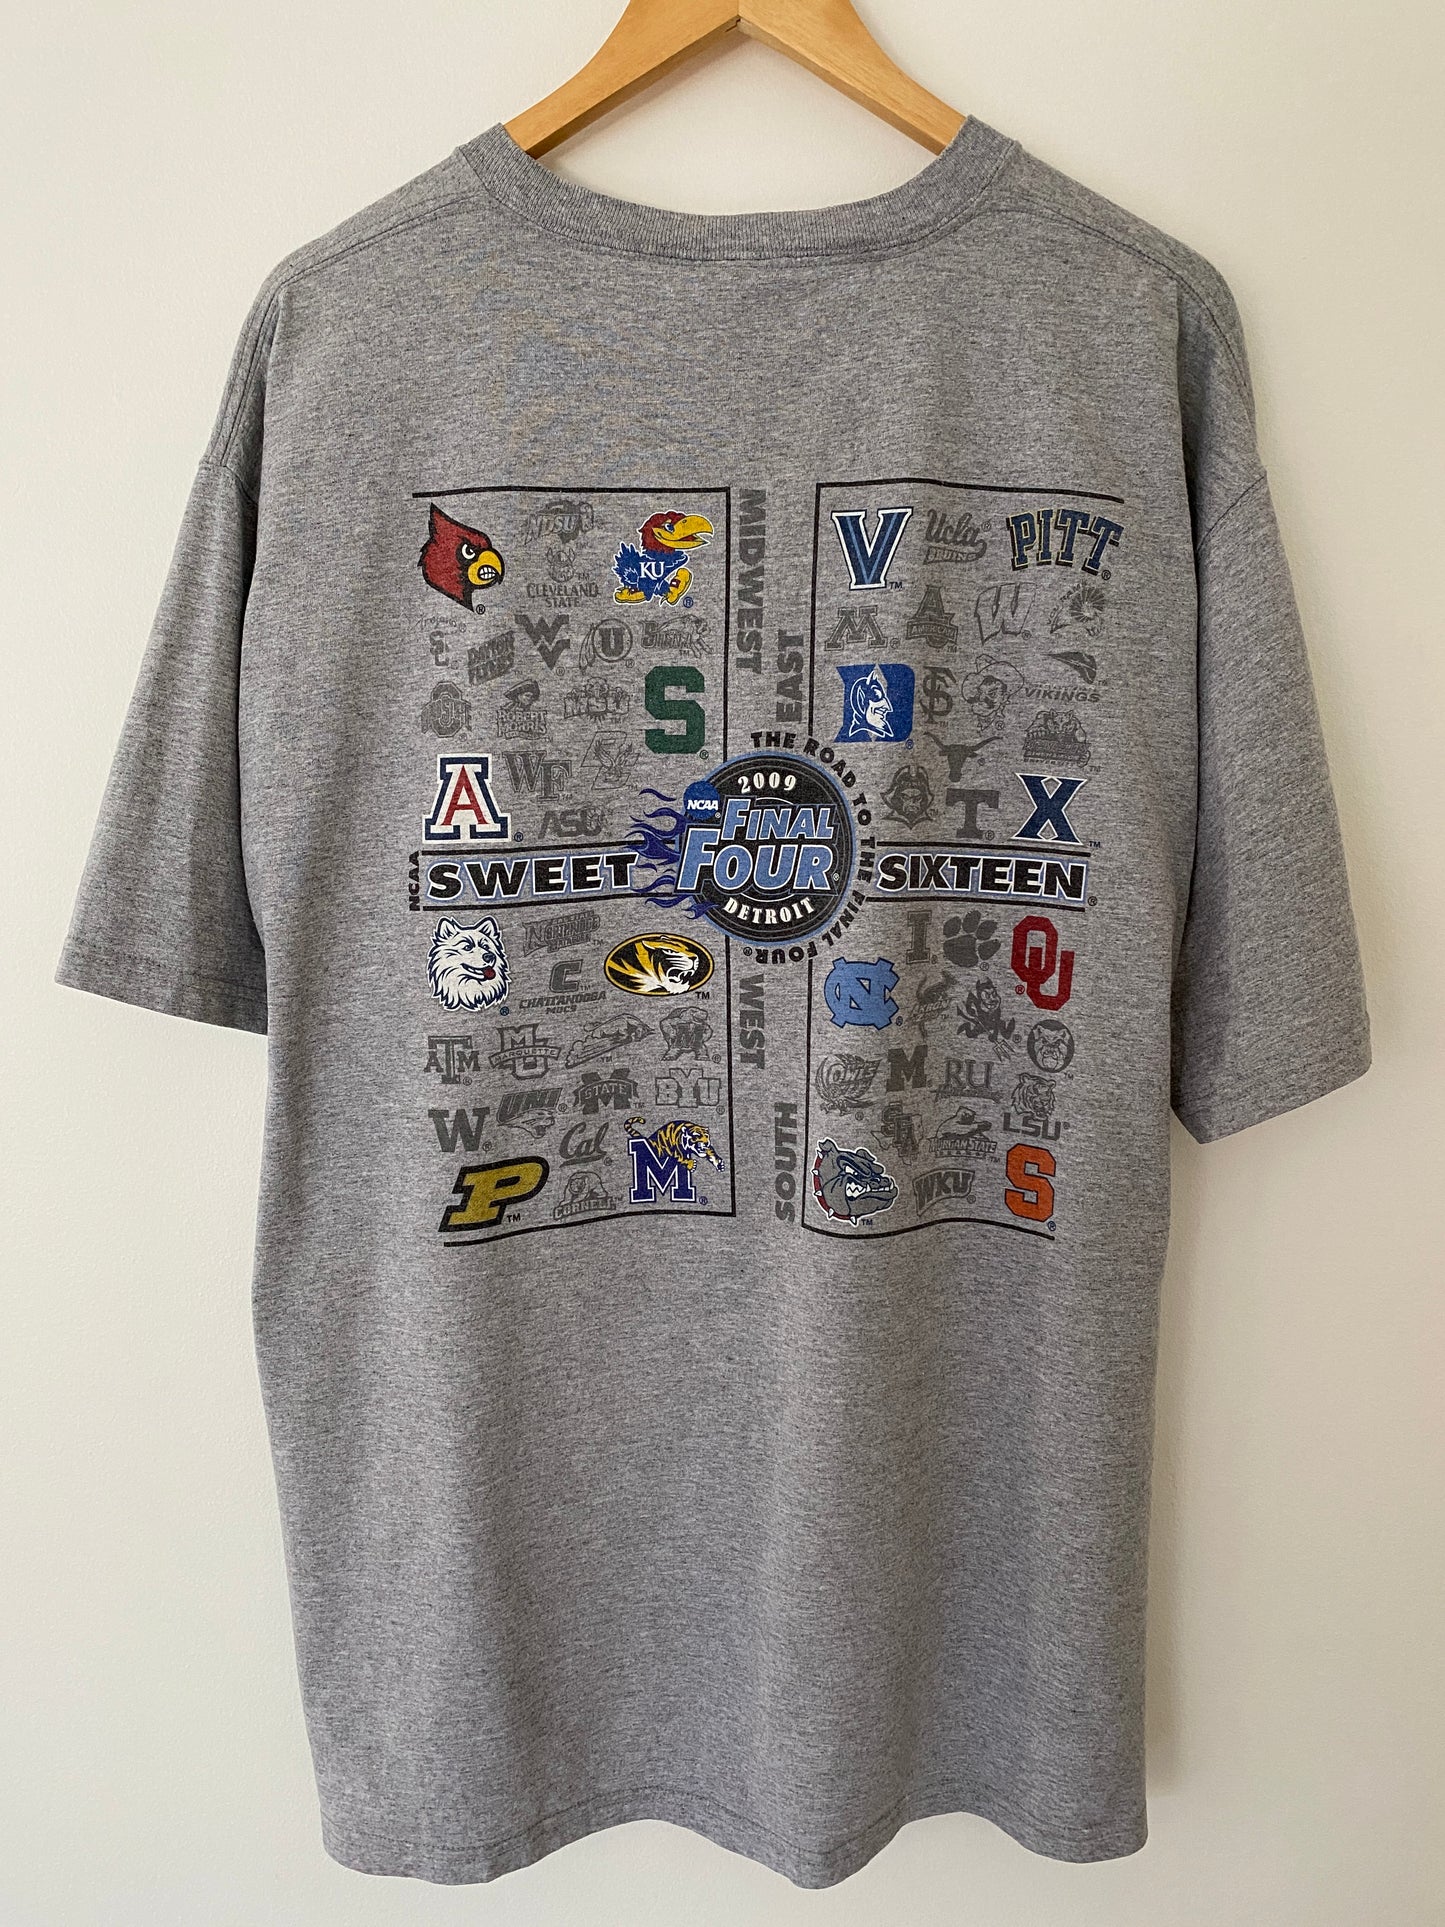 2009 NCAA Basketball Sweet Sixteen T-Shirt - XL